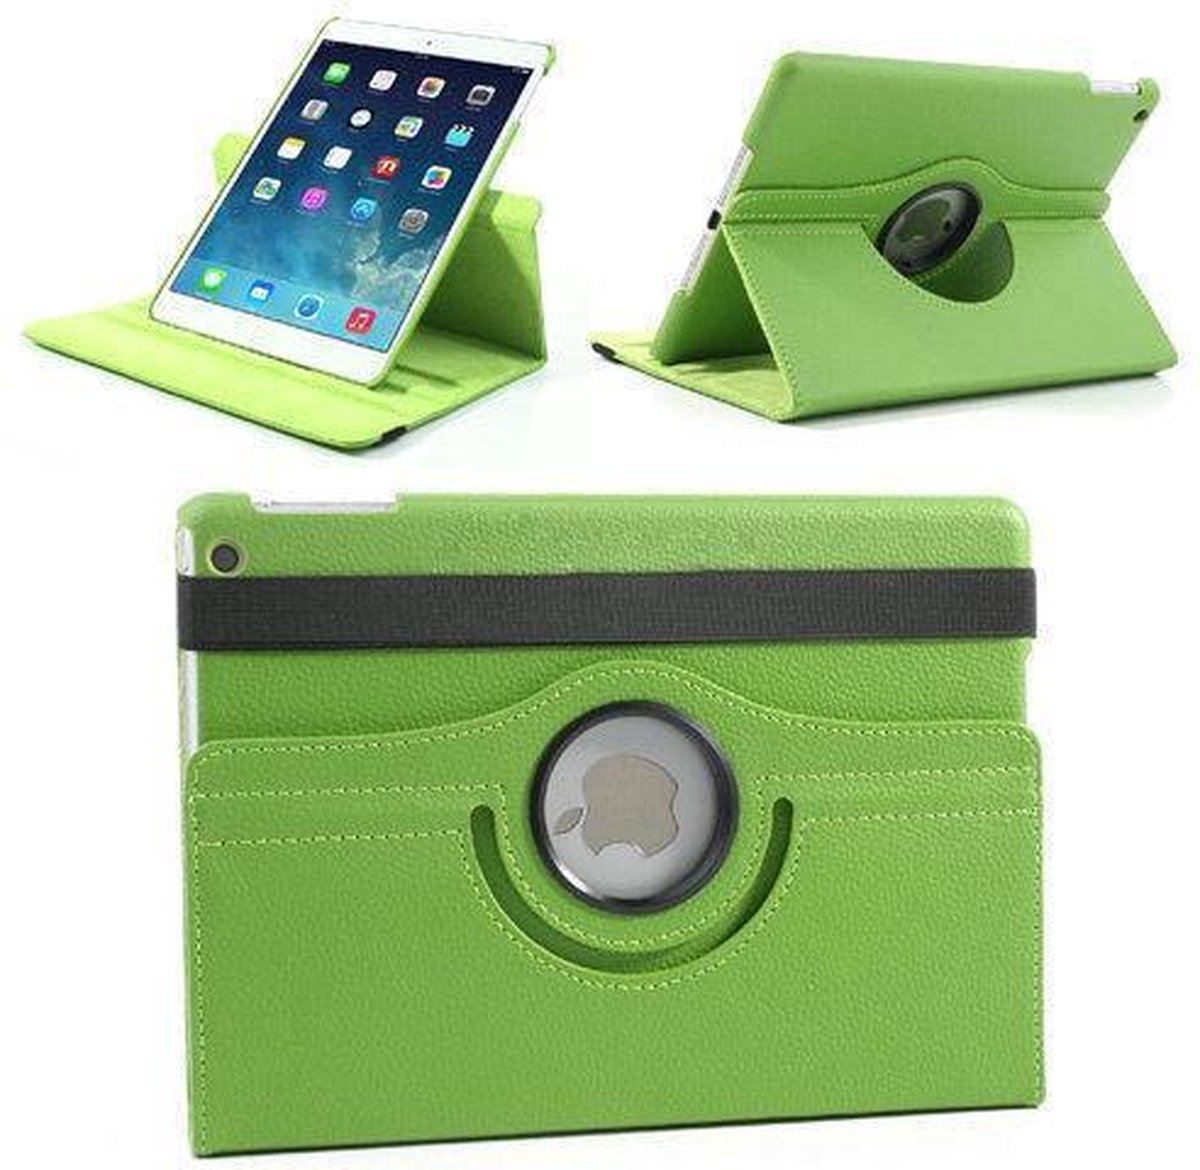 Groen lederen 360 graden smartcover hoes iPad Air